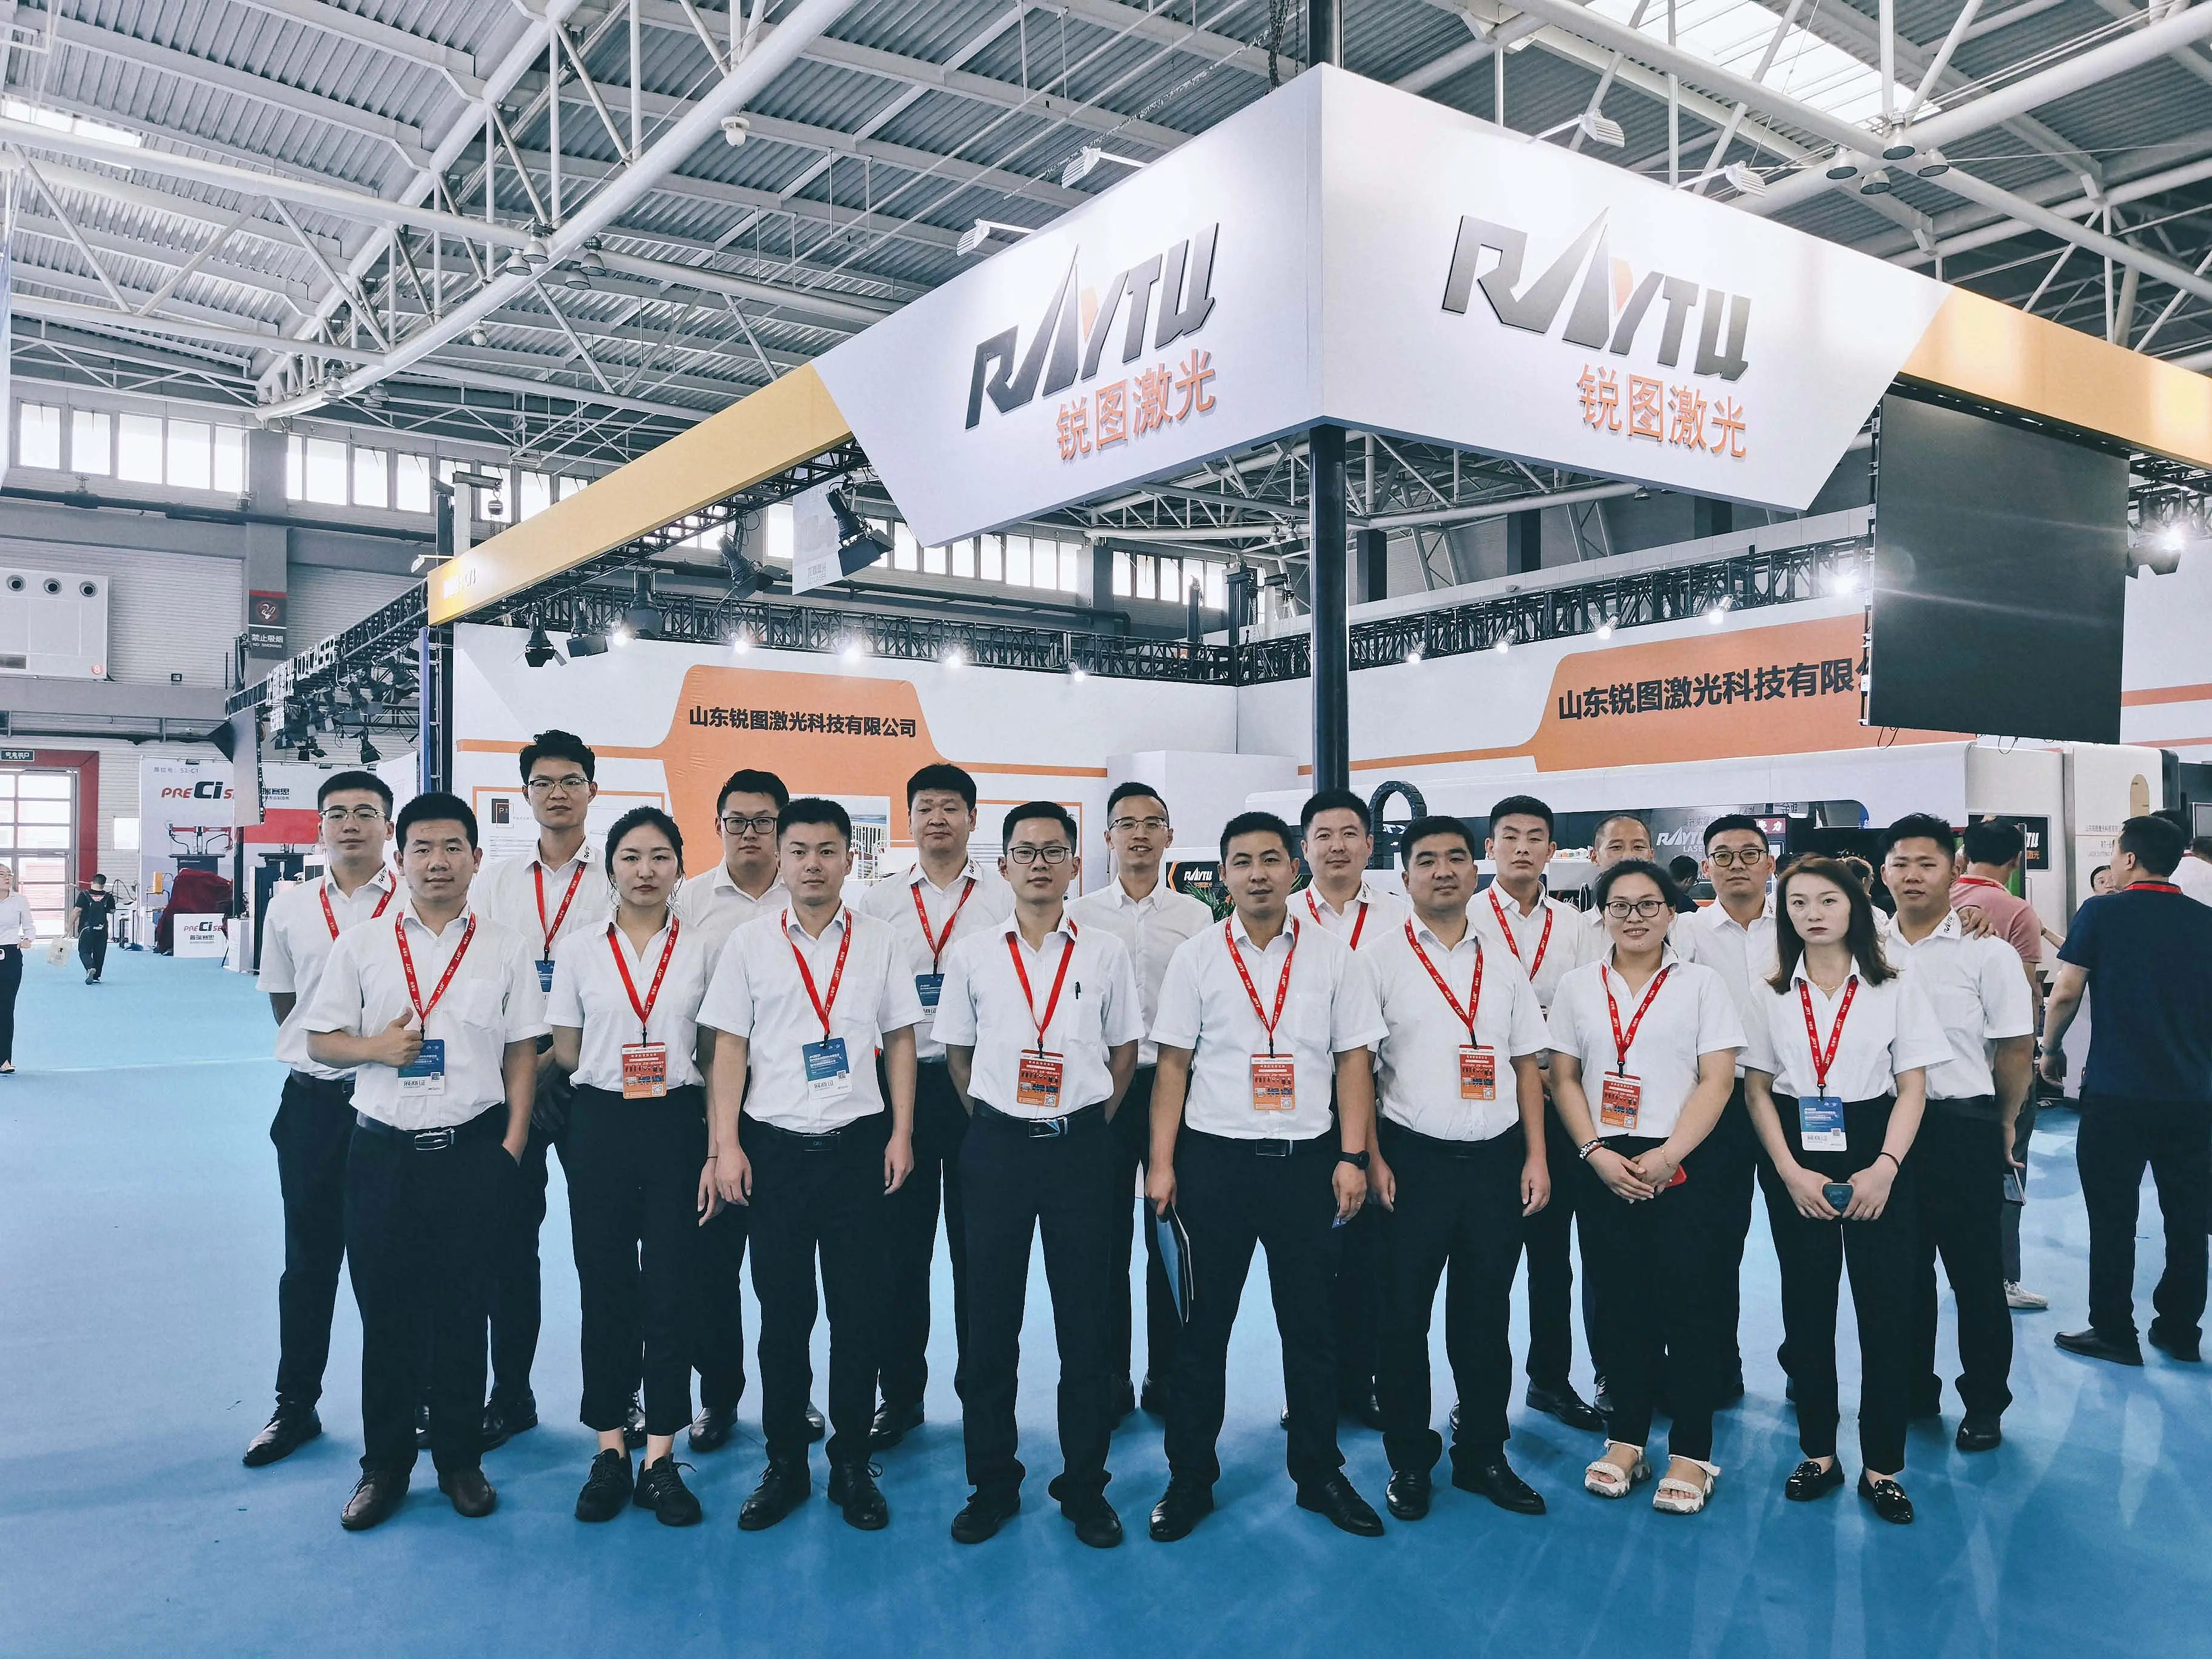 Ritu laser a été invité à participer à la 24e Exposition internationale des machines - outils de Qingdao (jm2021)